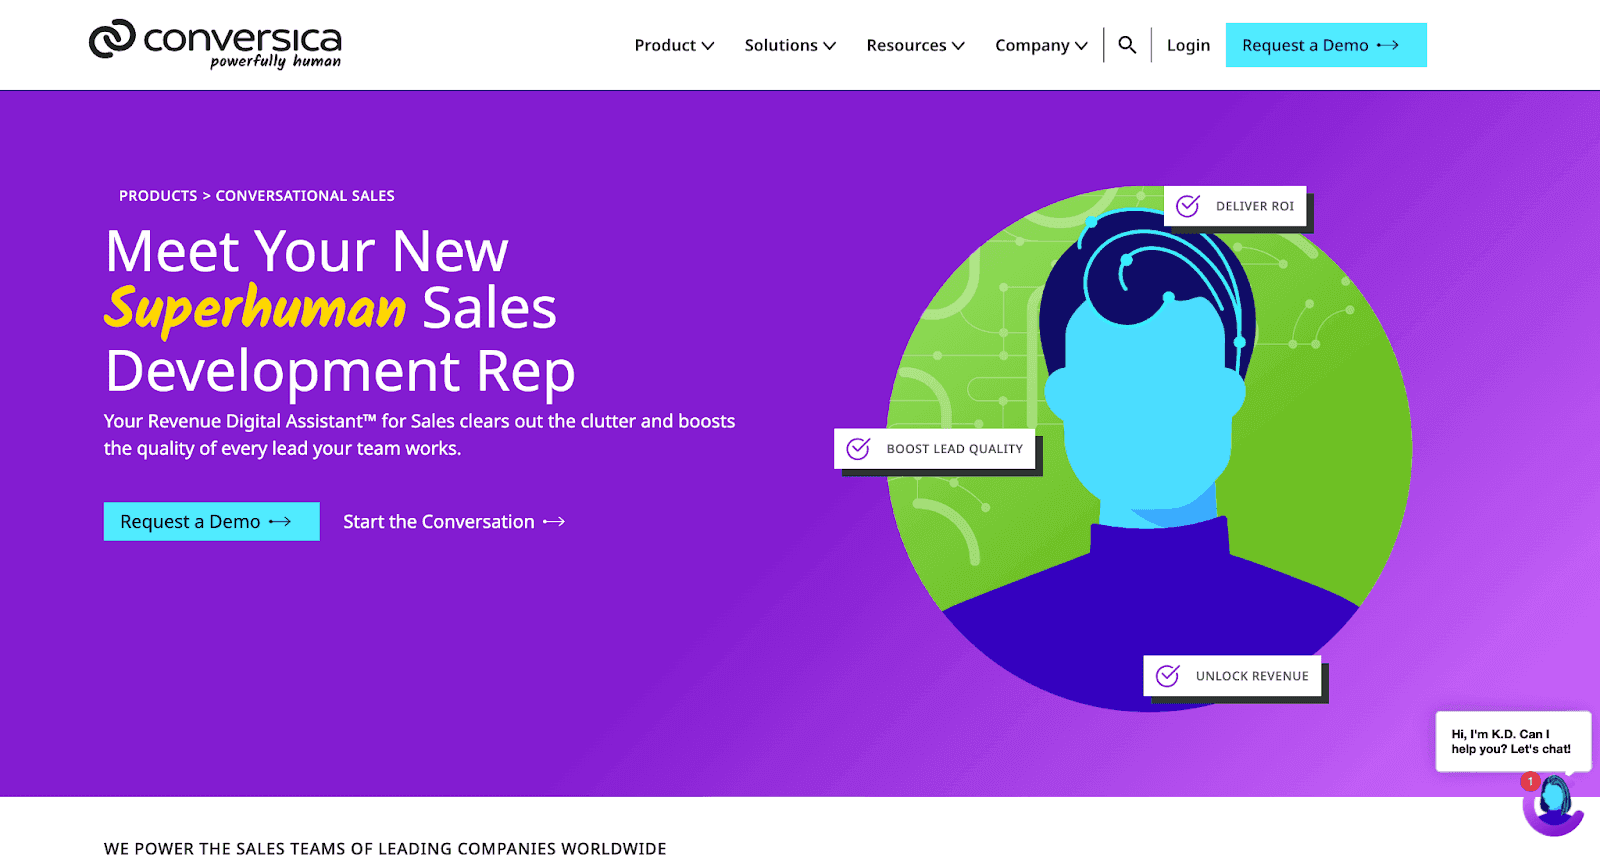 Conversica website - Meet Your New Superhuman Sales Development Rep 